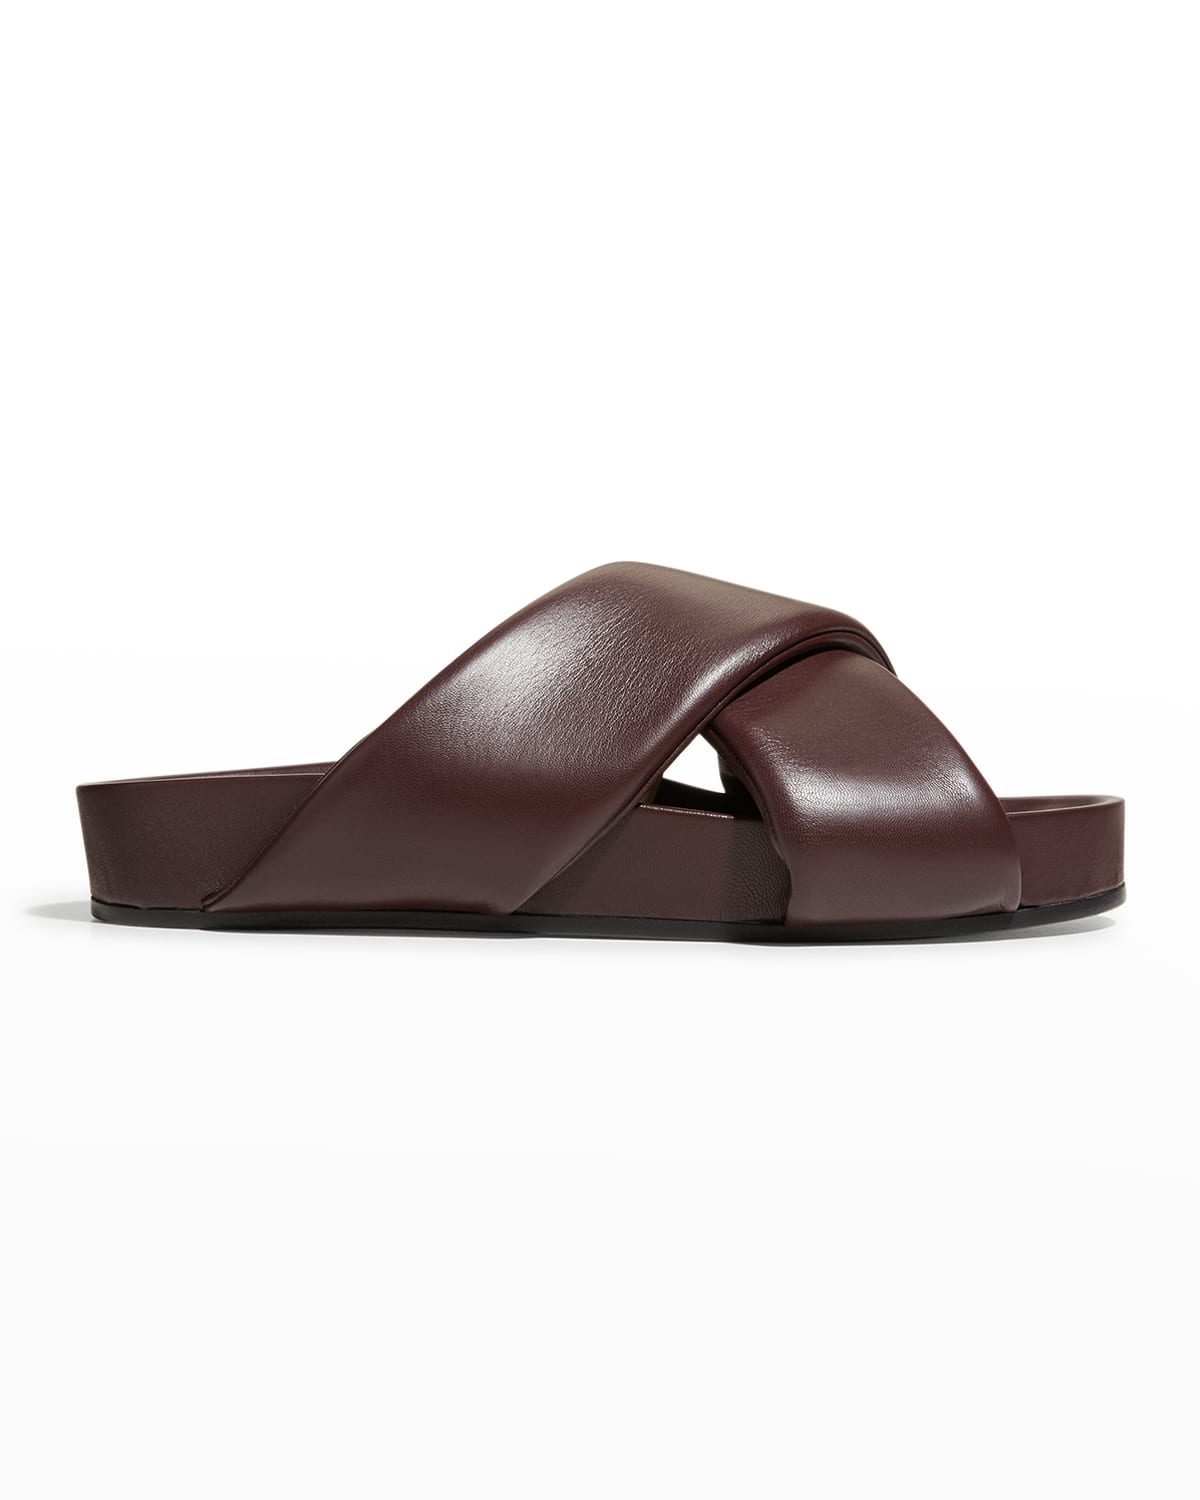 Jil Sander Men's Leather Crisscross Slide Sandals